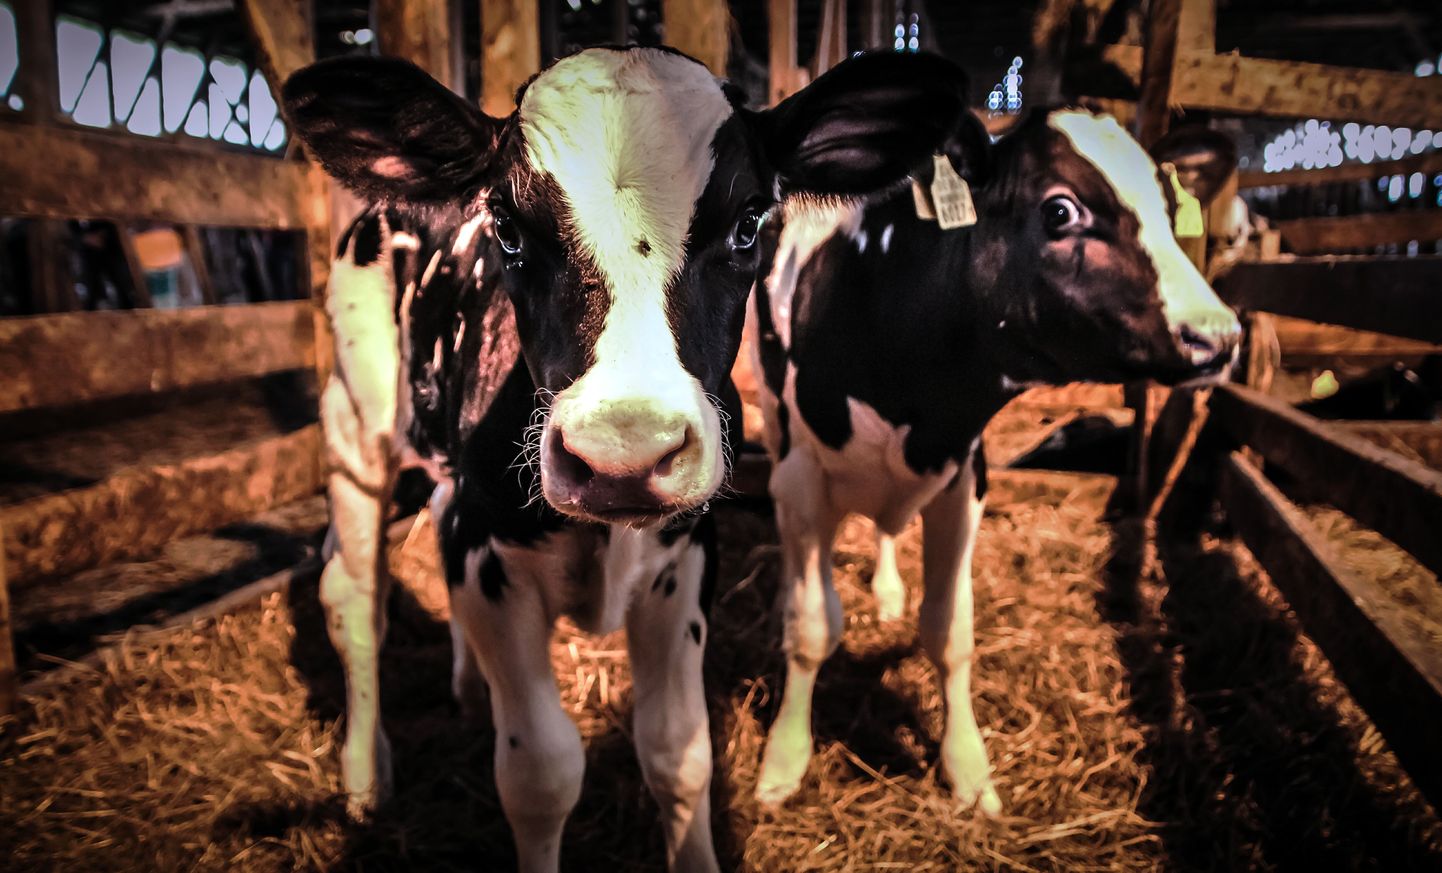 Esimesele avatud talude päevale on ennast kirja pannud ka mahepõllumajandusliku loomakasvatuse ja piimatöötlemisega tegelev Mätiku talu. Foto on illustreeriv.